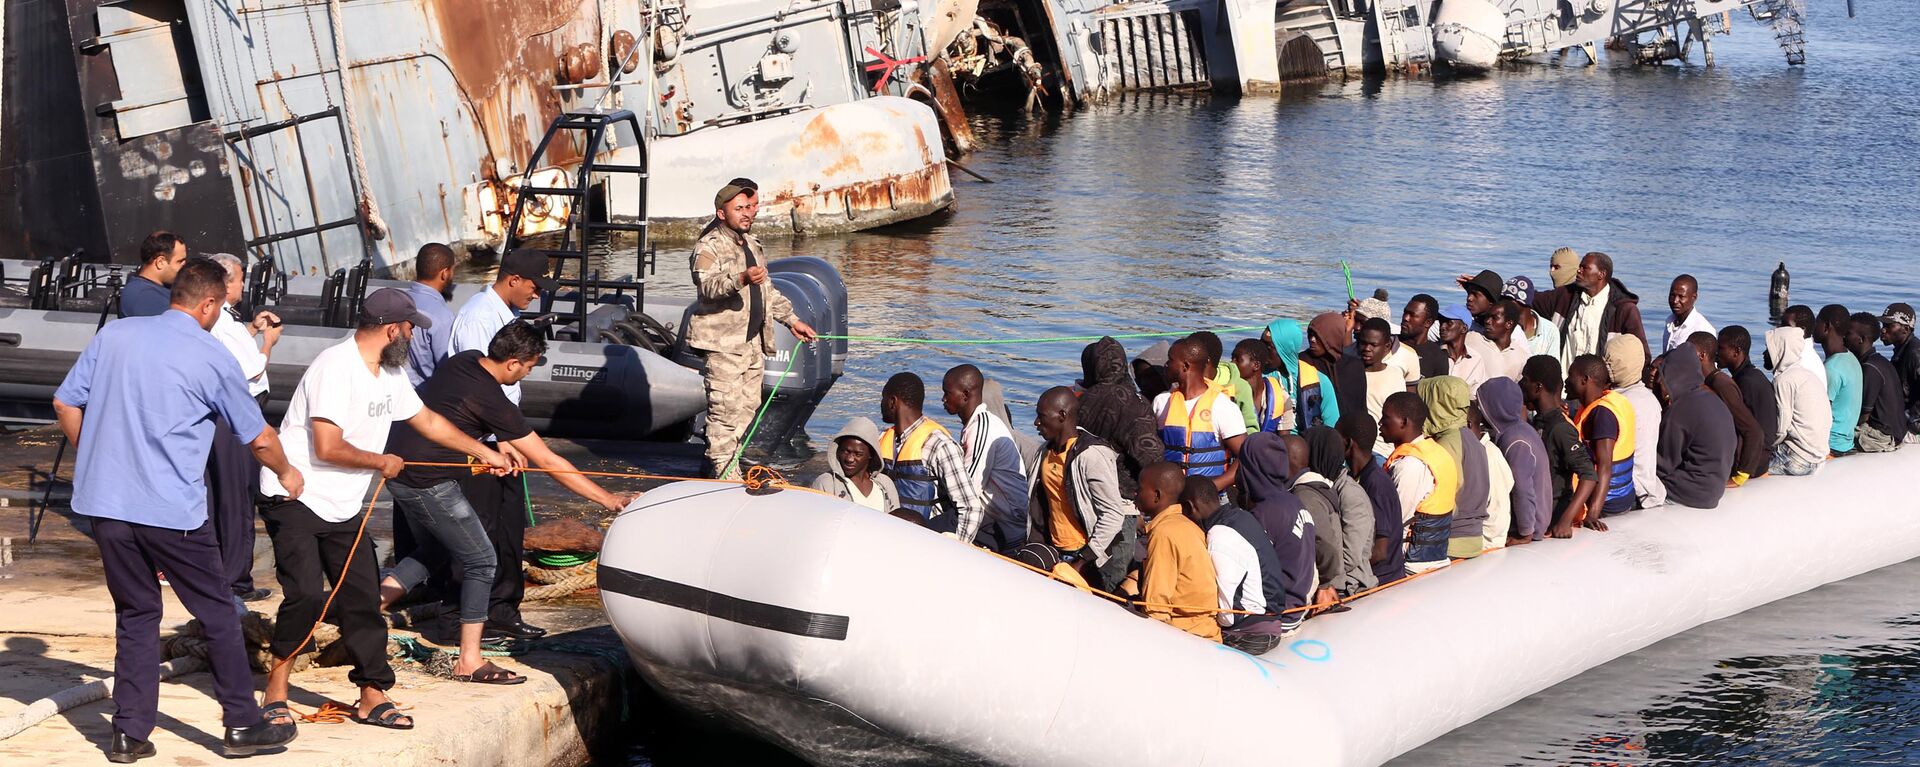  خفر السواحل الليبي يقوم بسحب قارب يحمل مهاجرين أفارقة، تم إنقاذهم أثناء محاولتهم الوصول إلى أوروبا بطريقة غير شرعية، في قاعدة بحرية بالقرب من العاصمة طرابلس في 29 سبتمبر/ أيلول 2015. - سبوتنيك عربي, 1920, 12.10.2021